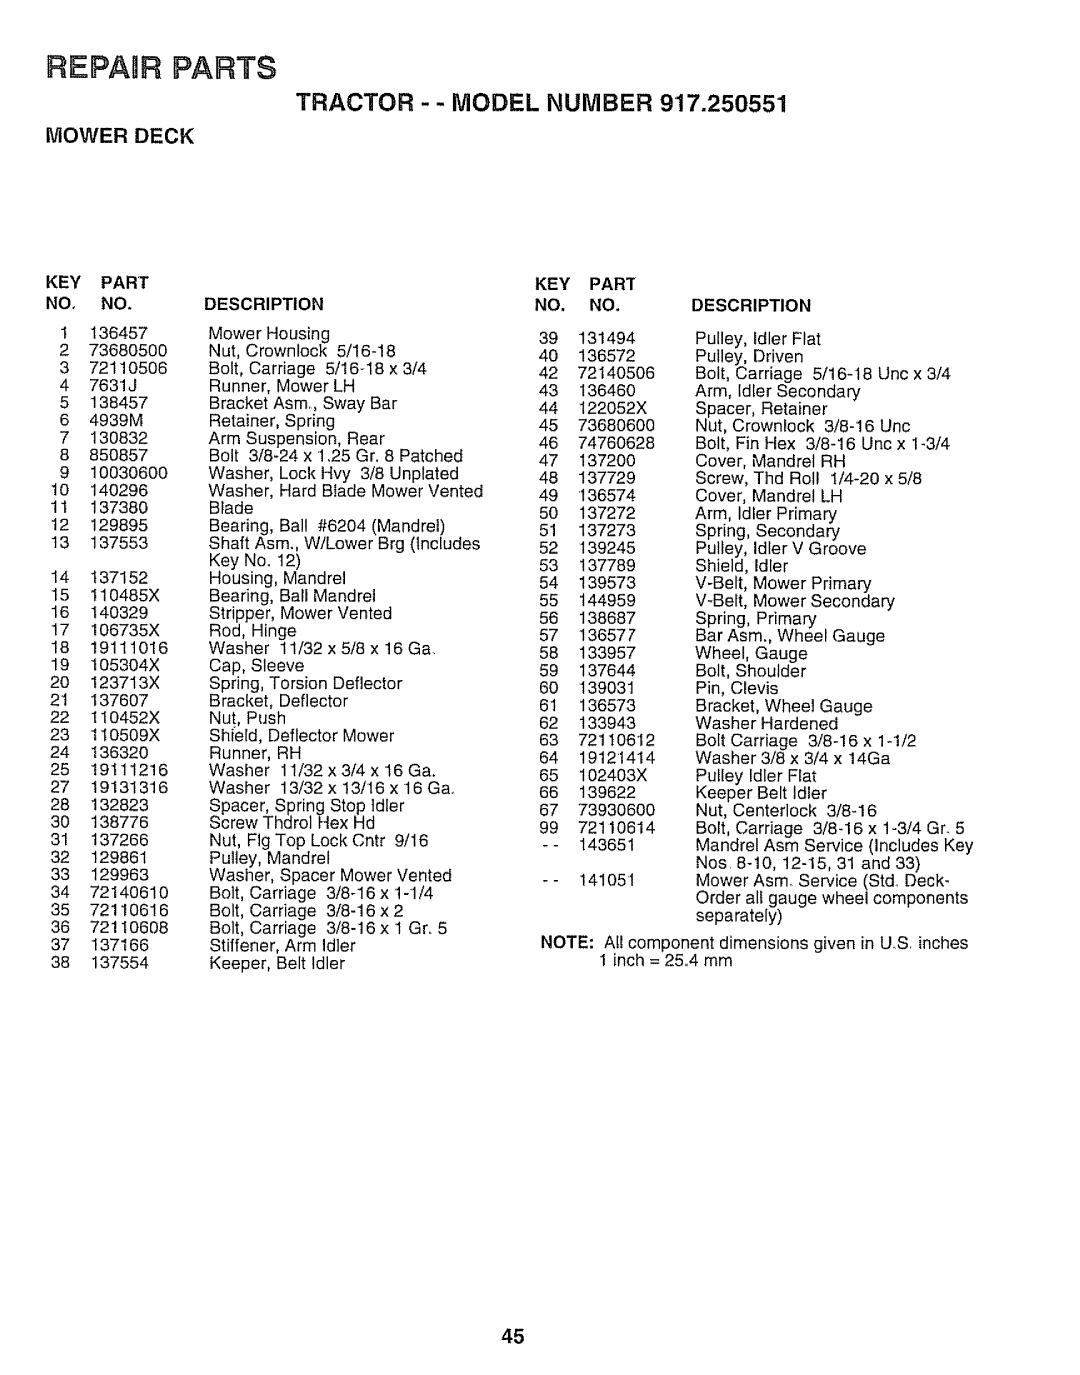 Sears 917.250551 manual REPAaR PARTS, Key Part No, No, Tractor - - Model Number, Mower Deck, Description 